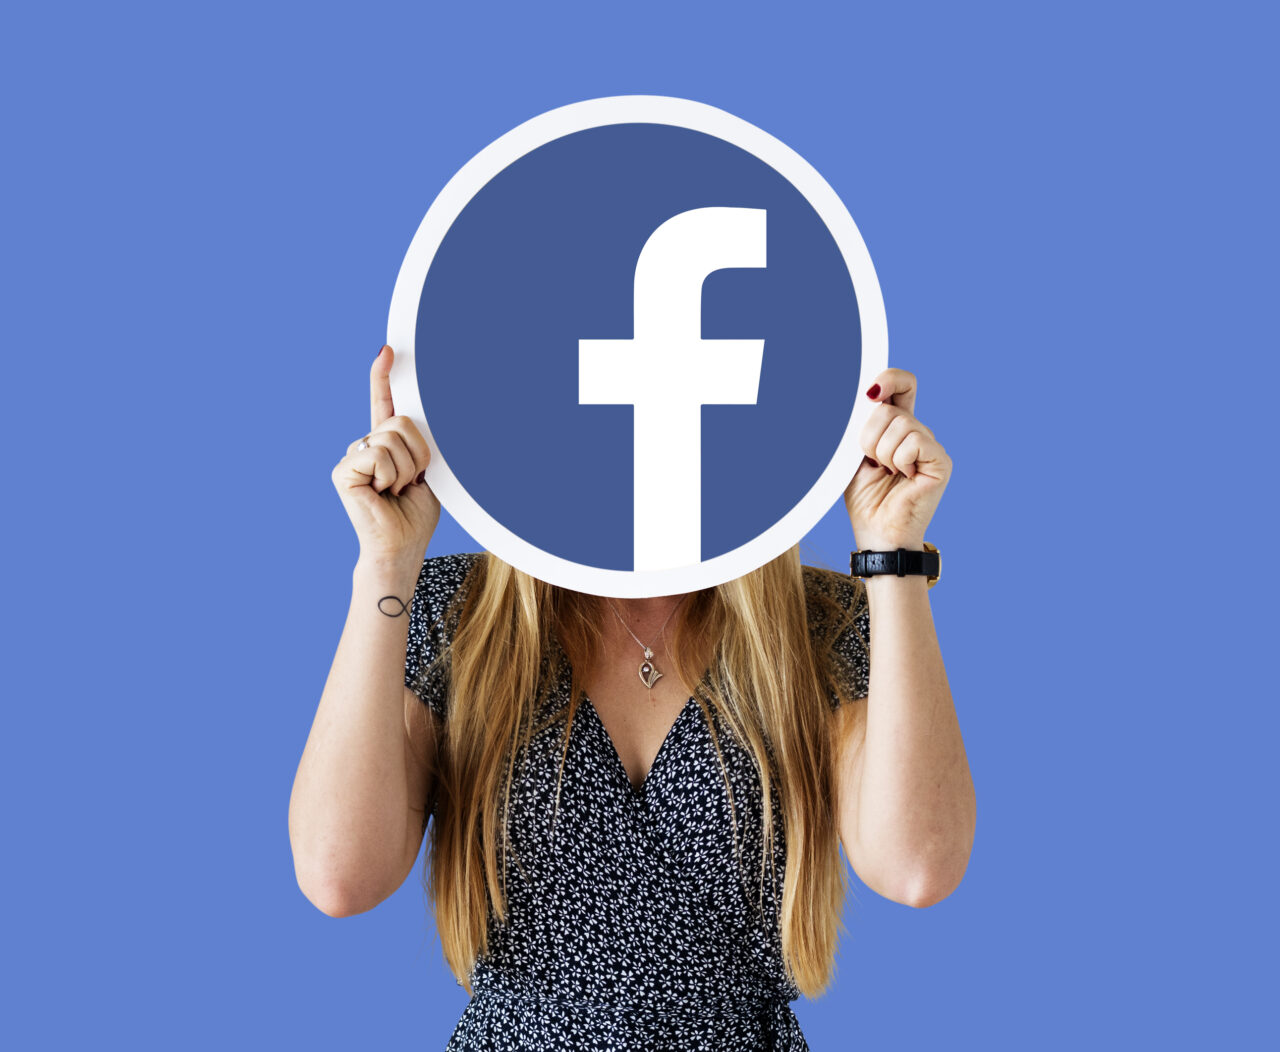 Ilustracja do tekstu Facebook nie działa. Osoba trzymająca duże logo Facebooka przed twarzą na niebieskim tle.